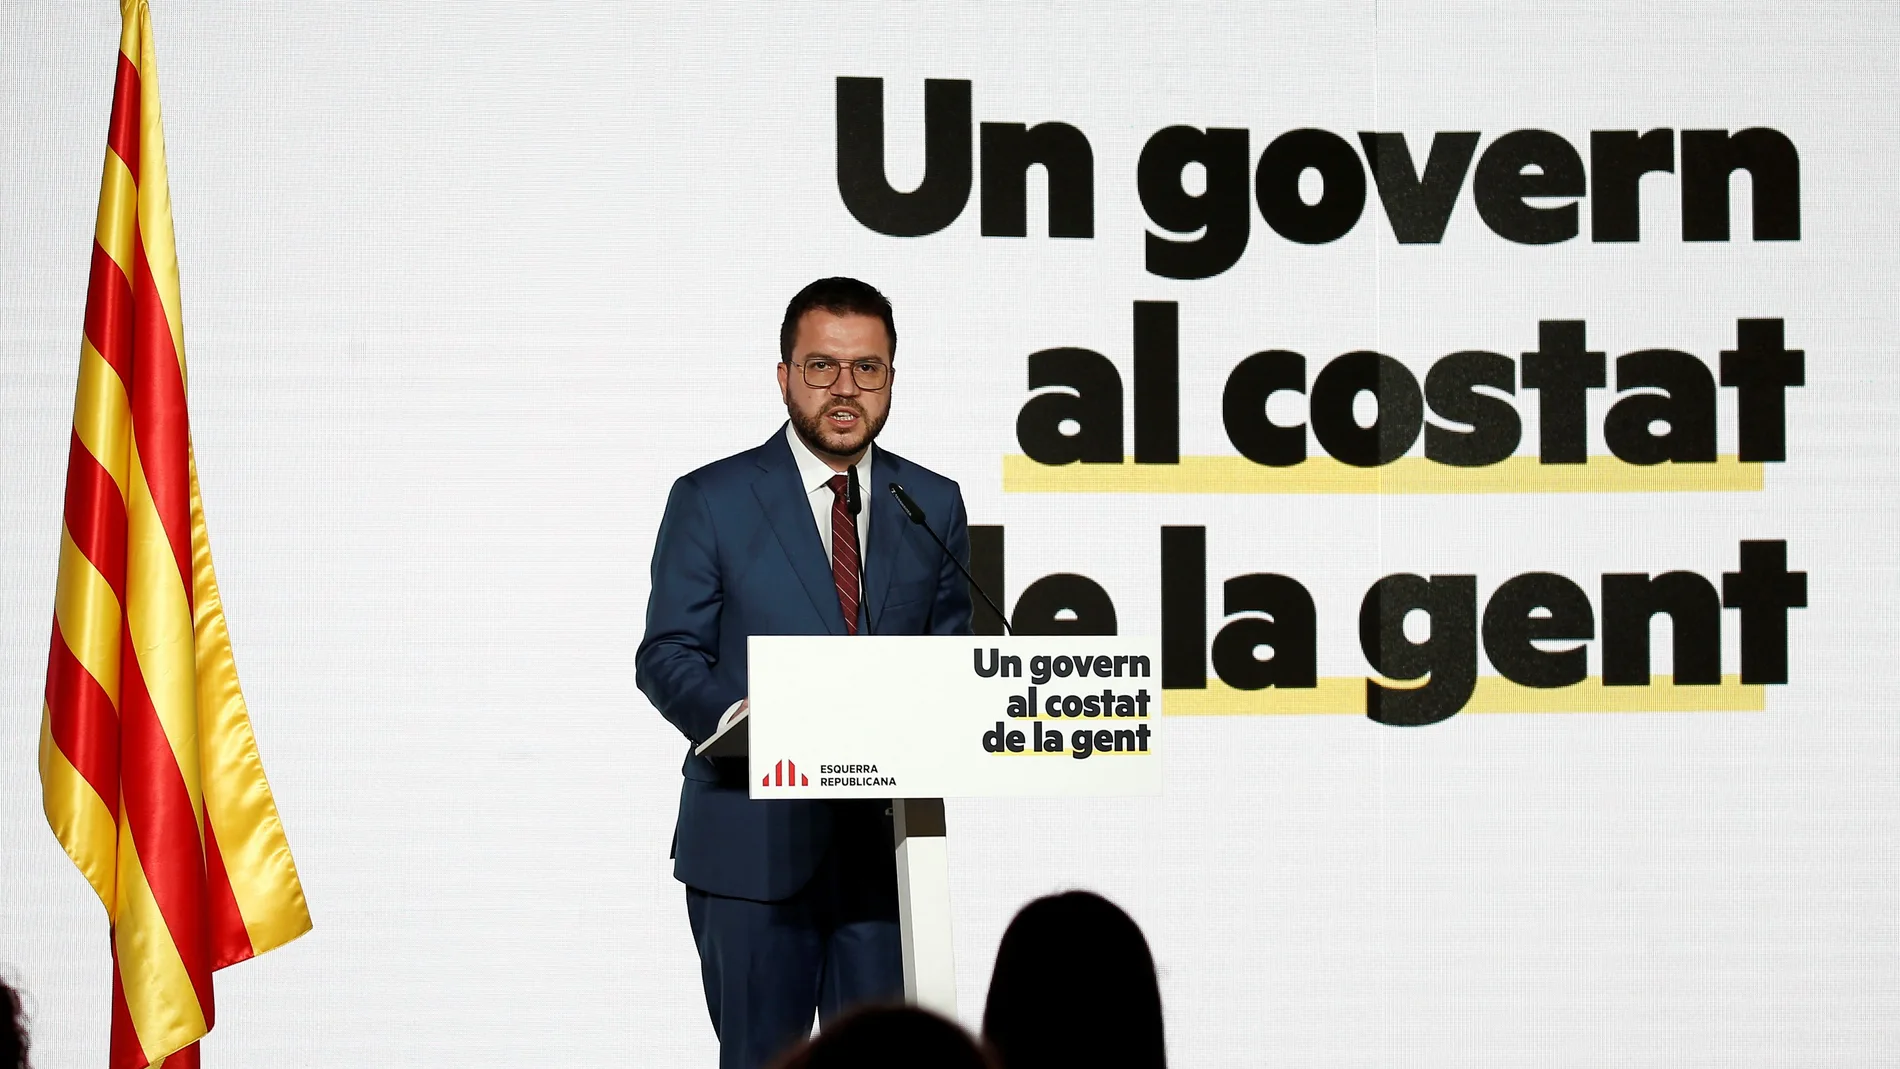 El vicepresidente del Govern y candidato de ERC a presidir la Generalitat, Pere Aragonès, durante la conferencia en Barcelona.